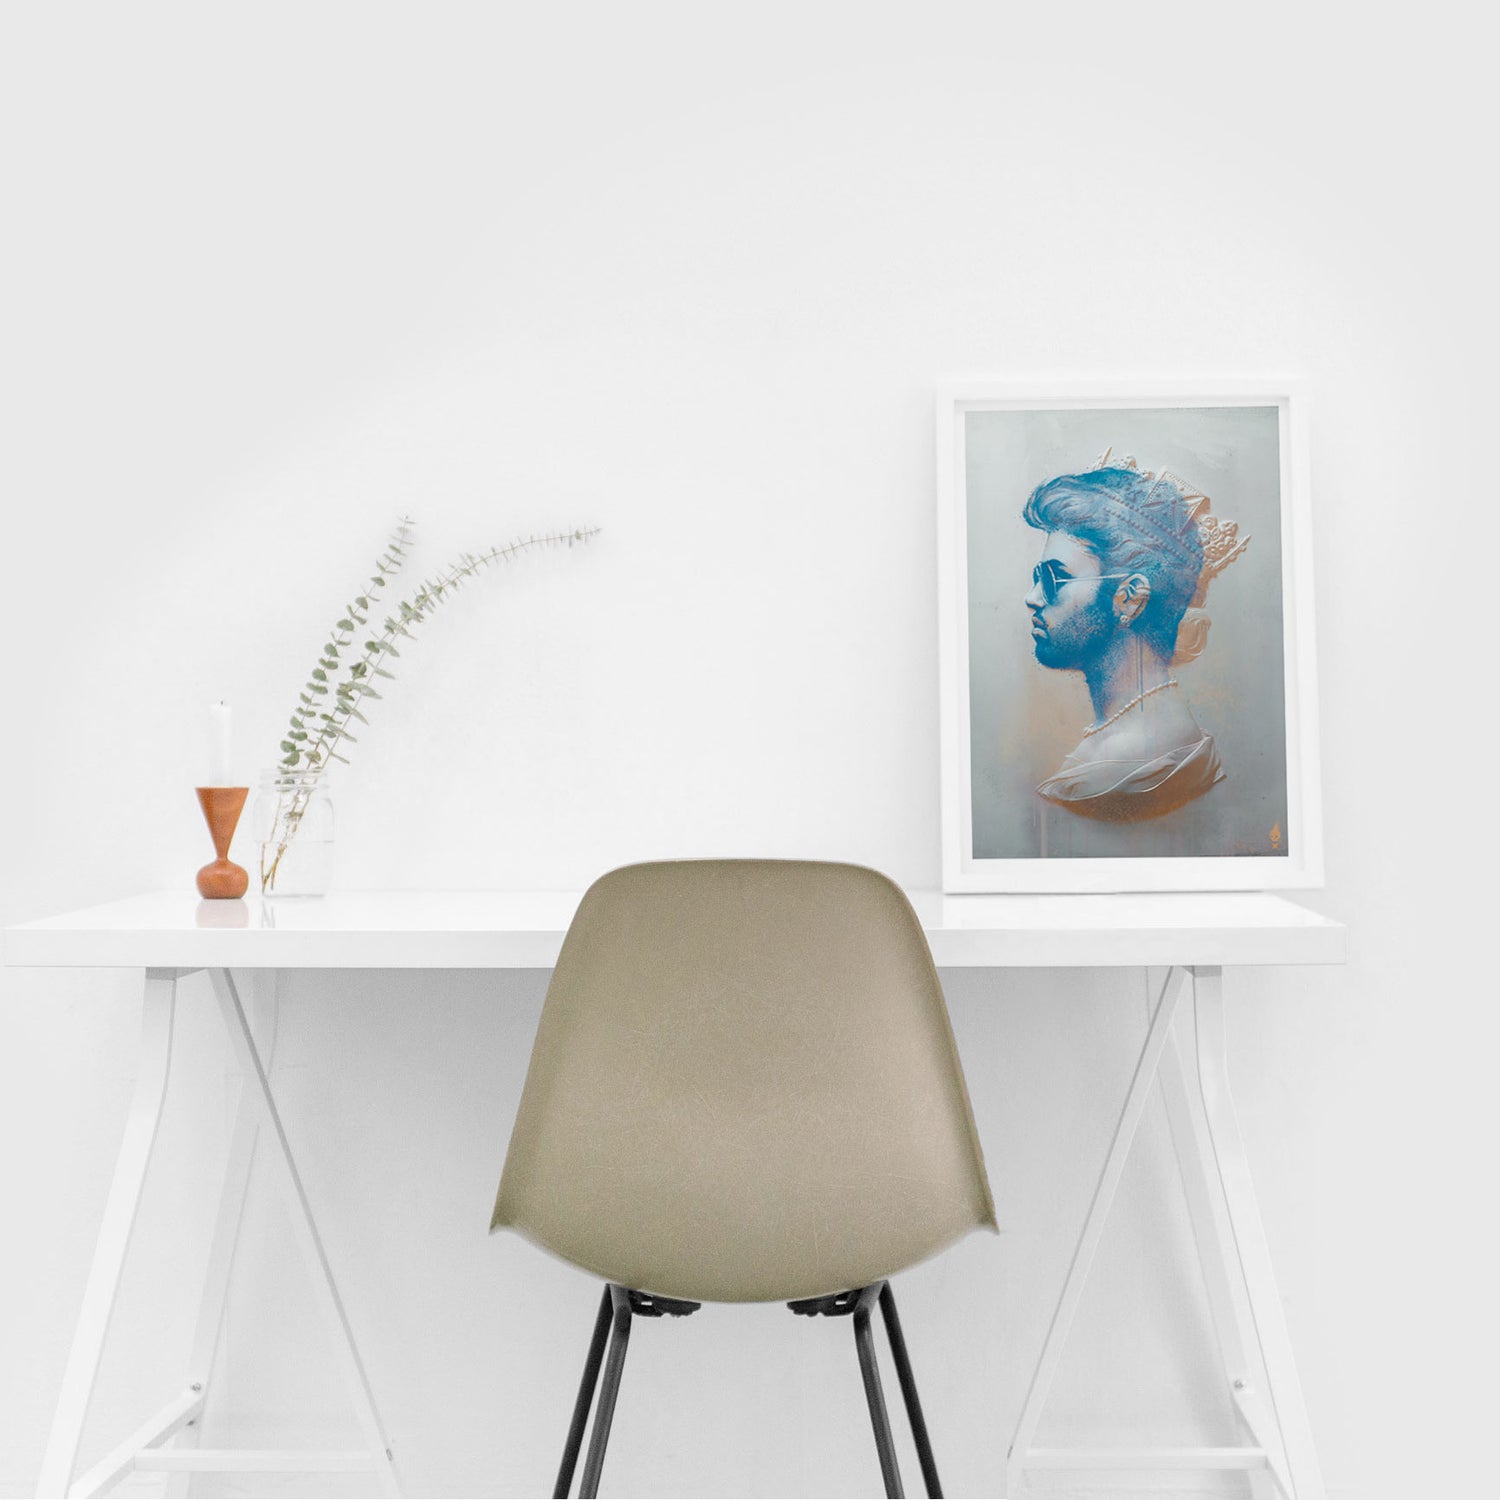 George Michael Framed Print on desk